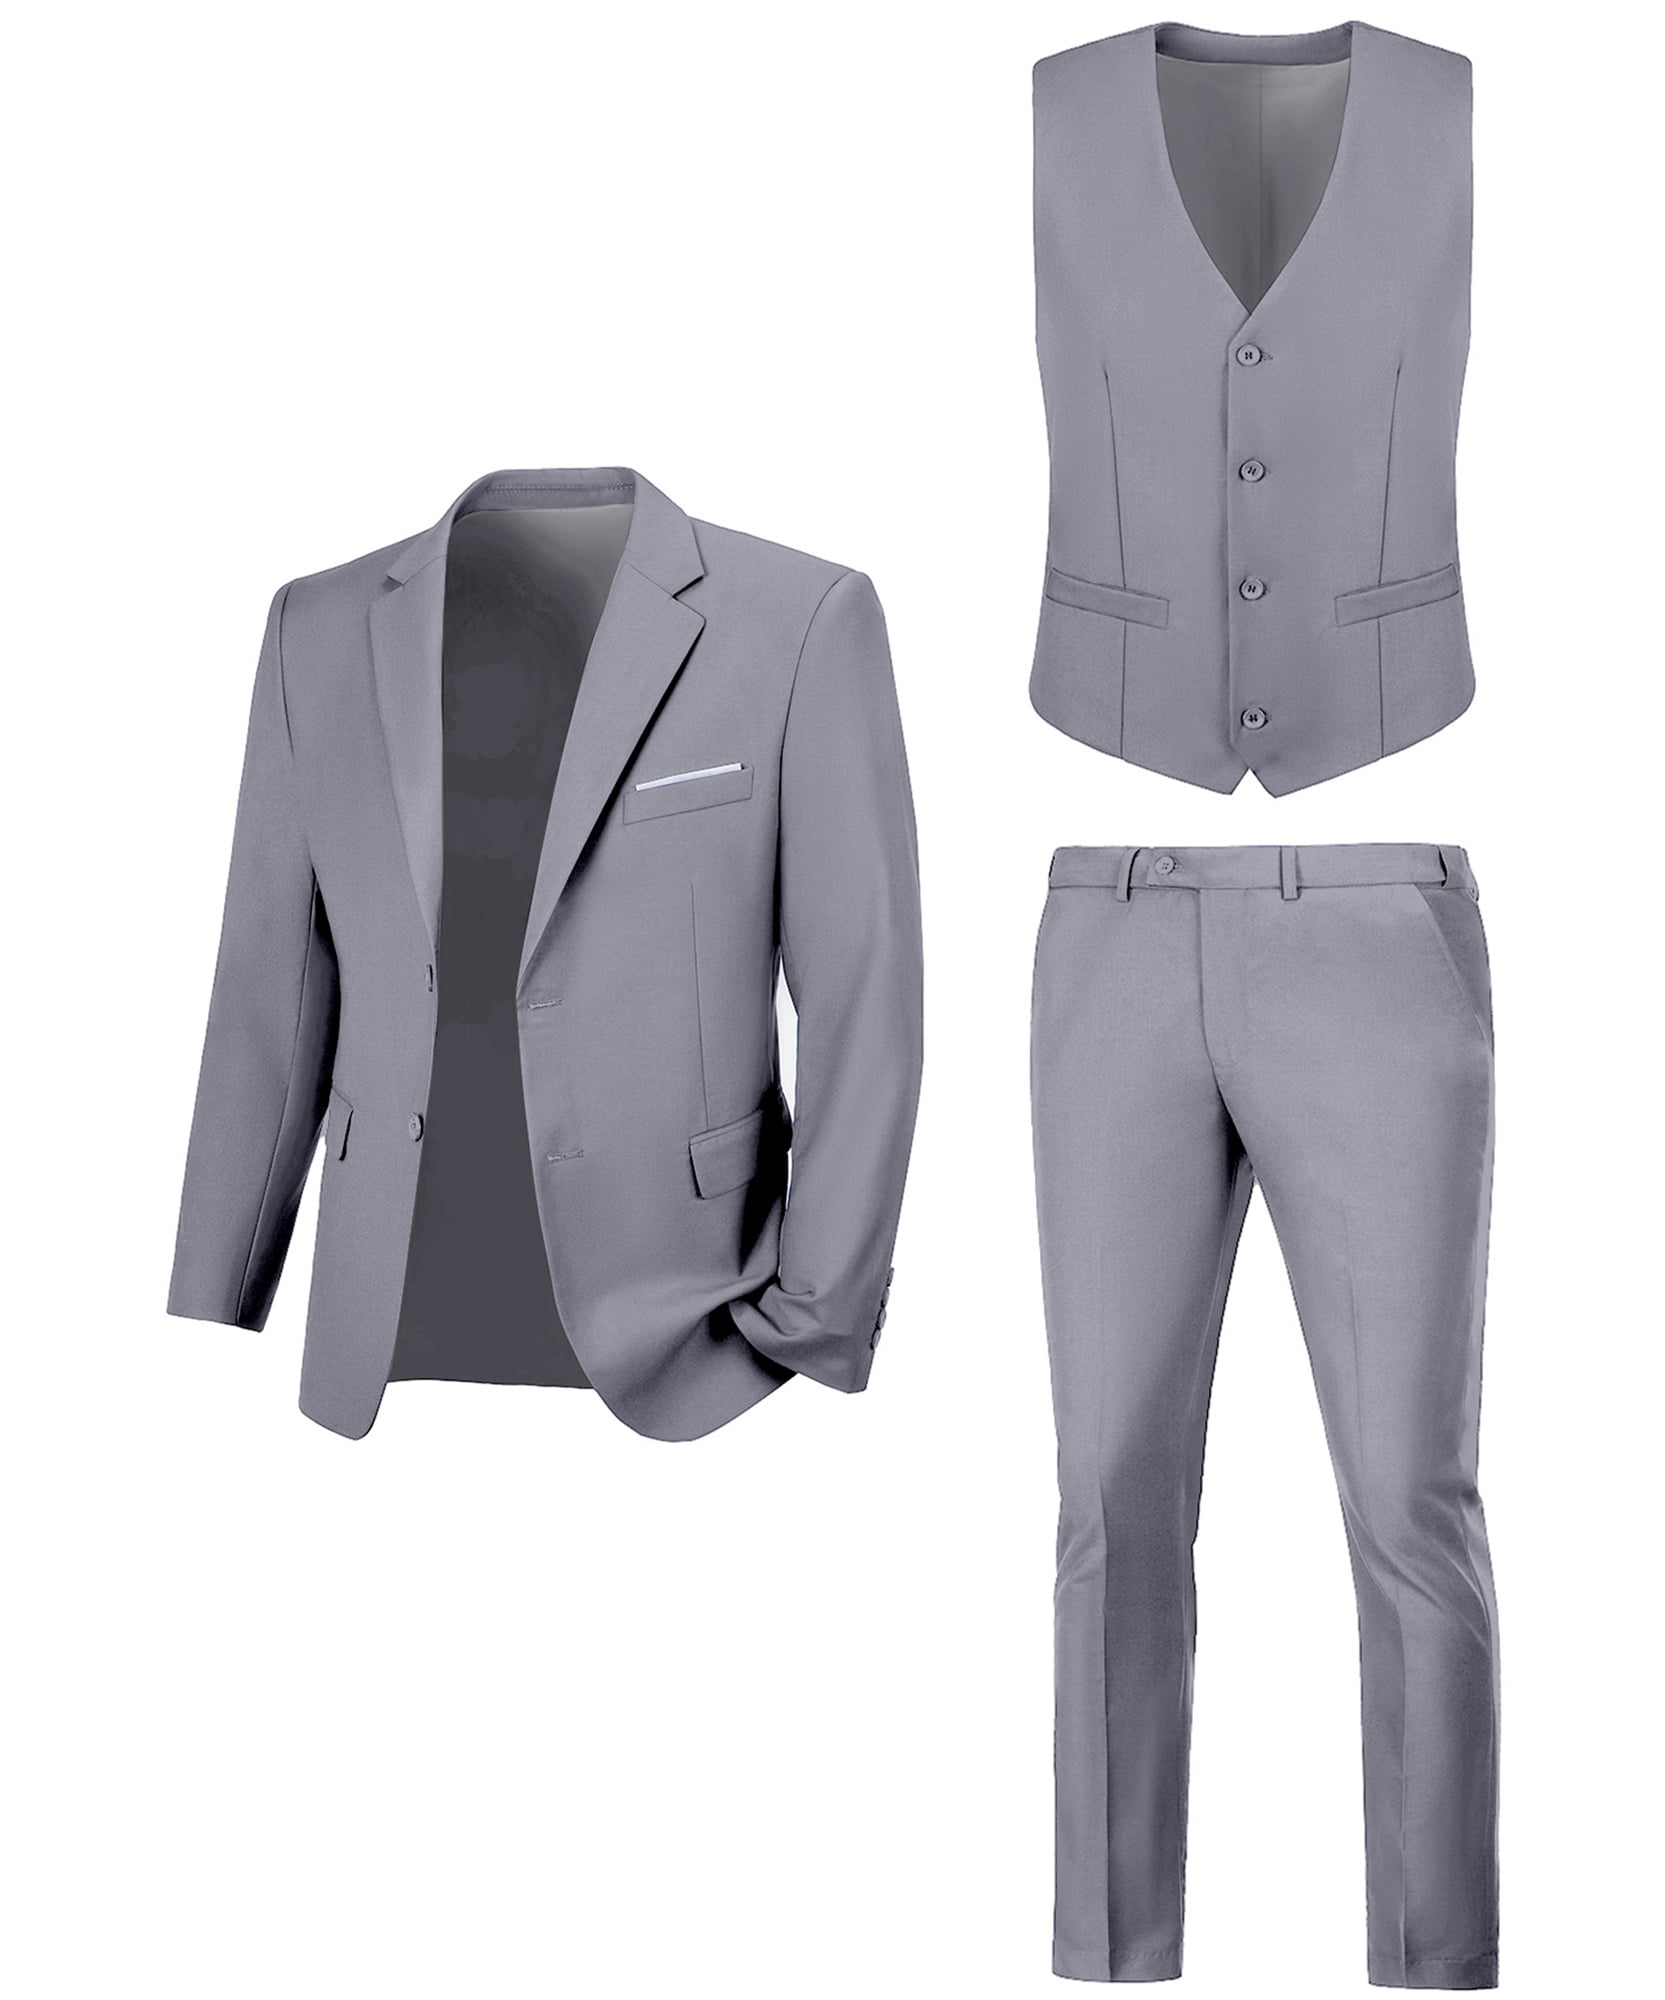 Men's Slim Fit Suit Set Business Formal Jacket Vest Pants for Wedding  Tuxedo 3 Piece Black : Clothing, Shoes & Jewelry - Amazon.com